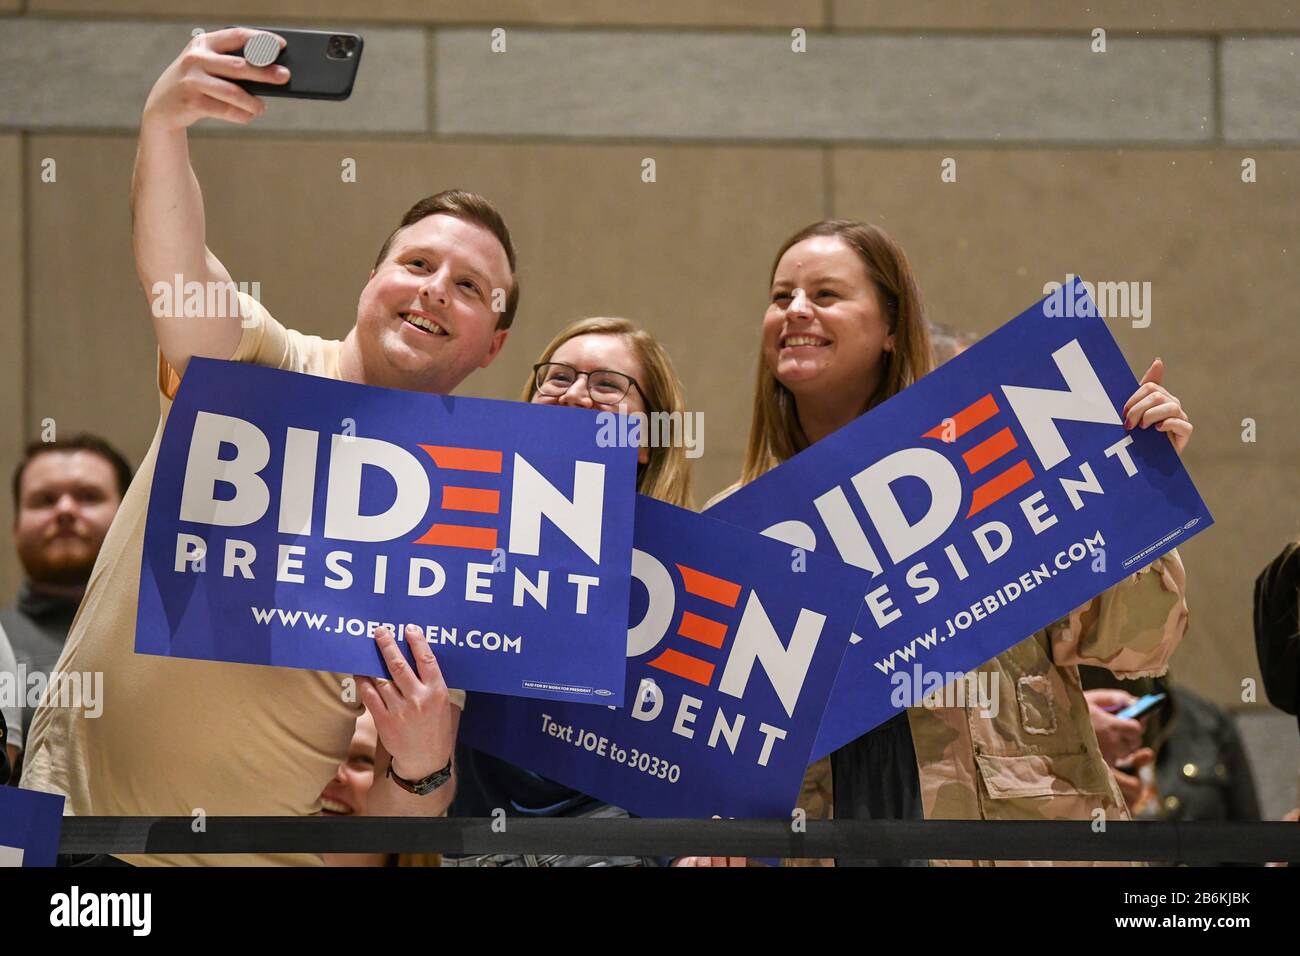 Joe Biden Anhänger, die politische Zeichen halten, warten darauf, dass der ehemalige Vizepräsident der Vereinigten Staaten von Amerika während der Urwahl im National Convention Center spricht - Stockfoto